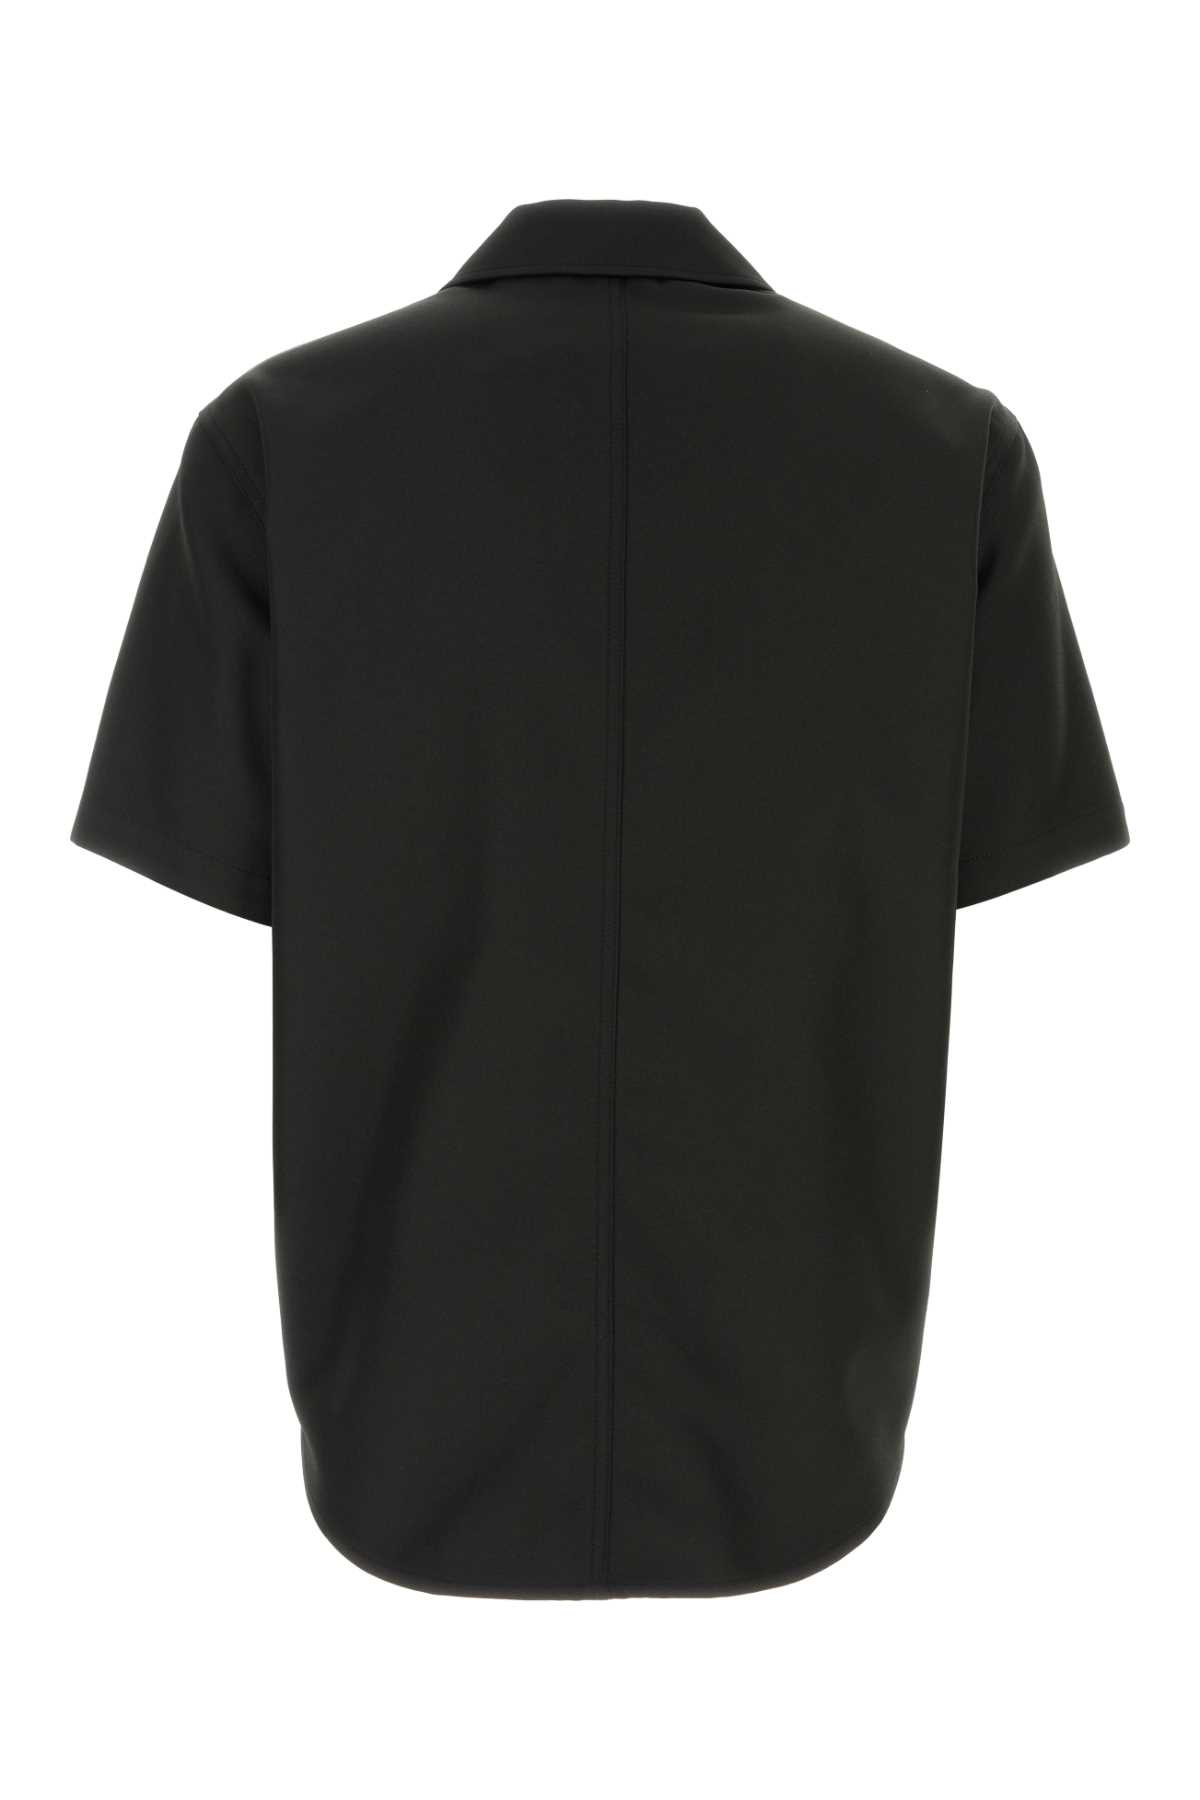 Shop Courrèges Black Polyester Shirt